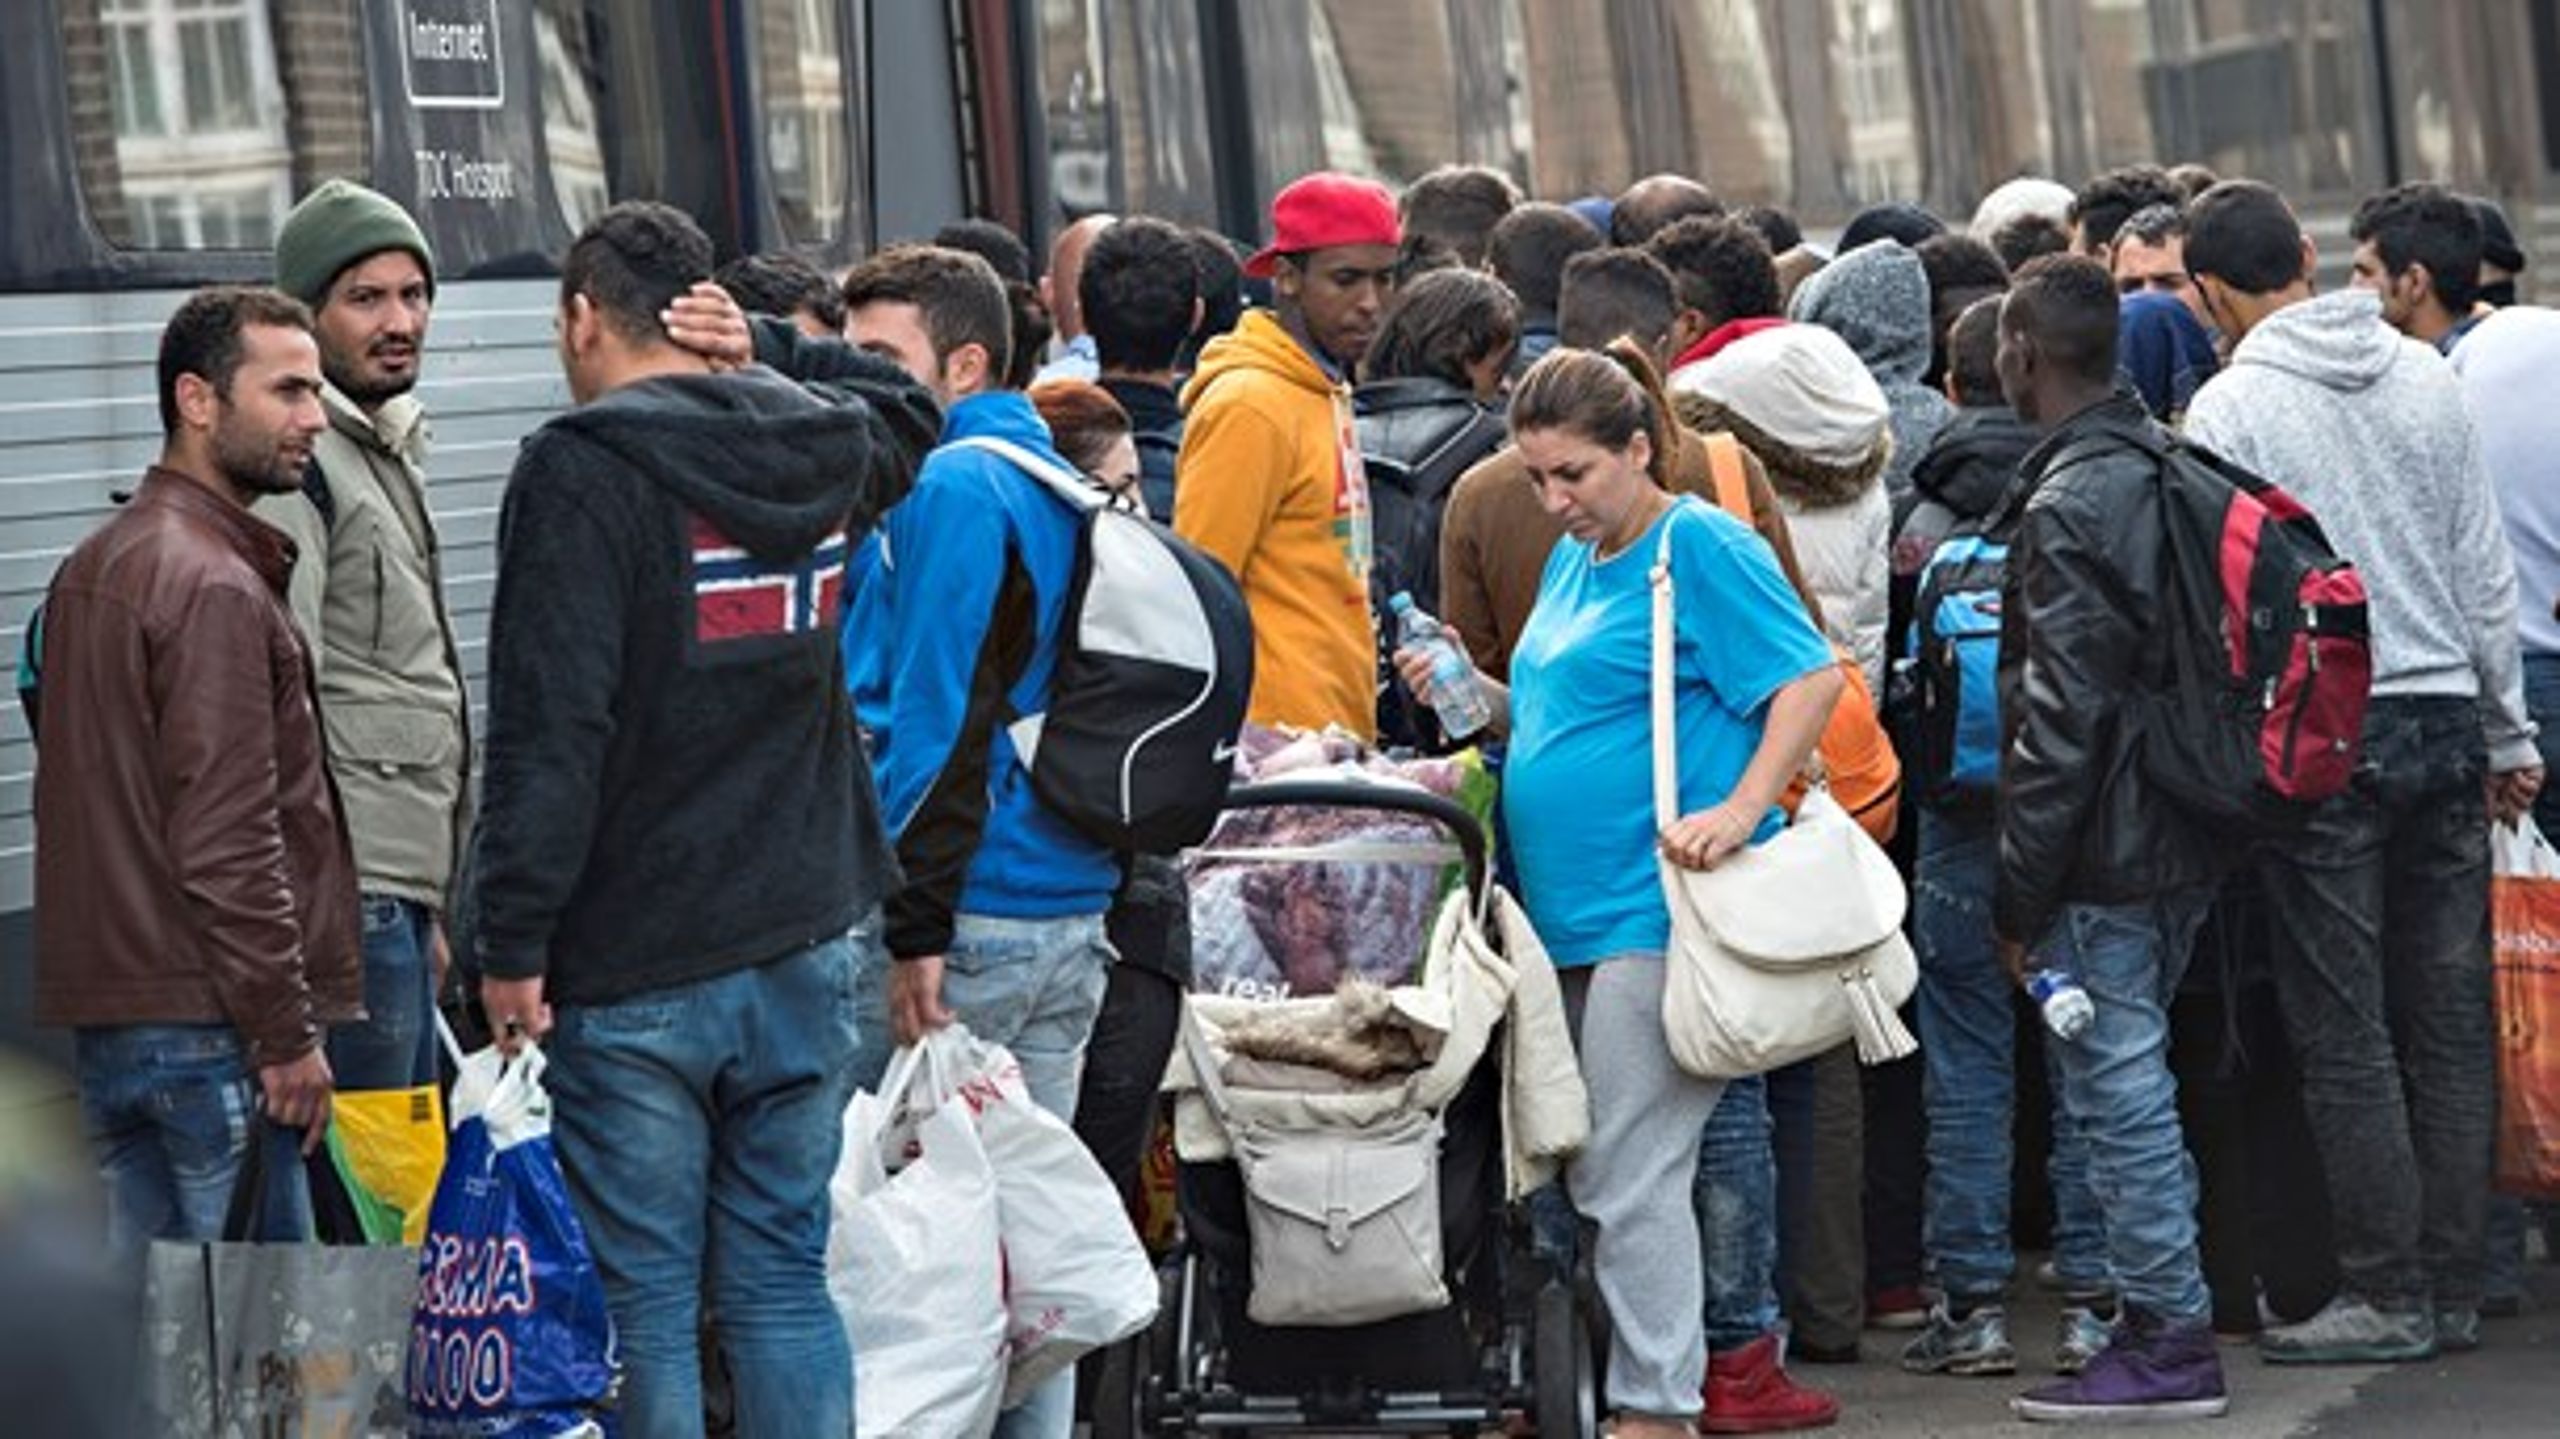 <div>Flygtninge og migranter på perronen i Padborg september 2015. Forgylder kommunerne dem med gratis tandlægehjælp på bekostning af etniske danskere?</div><h2></h2>